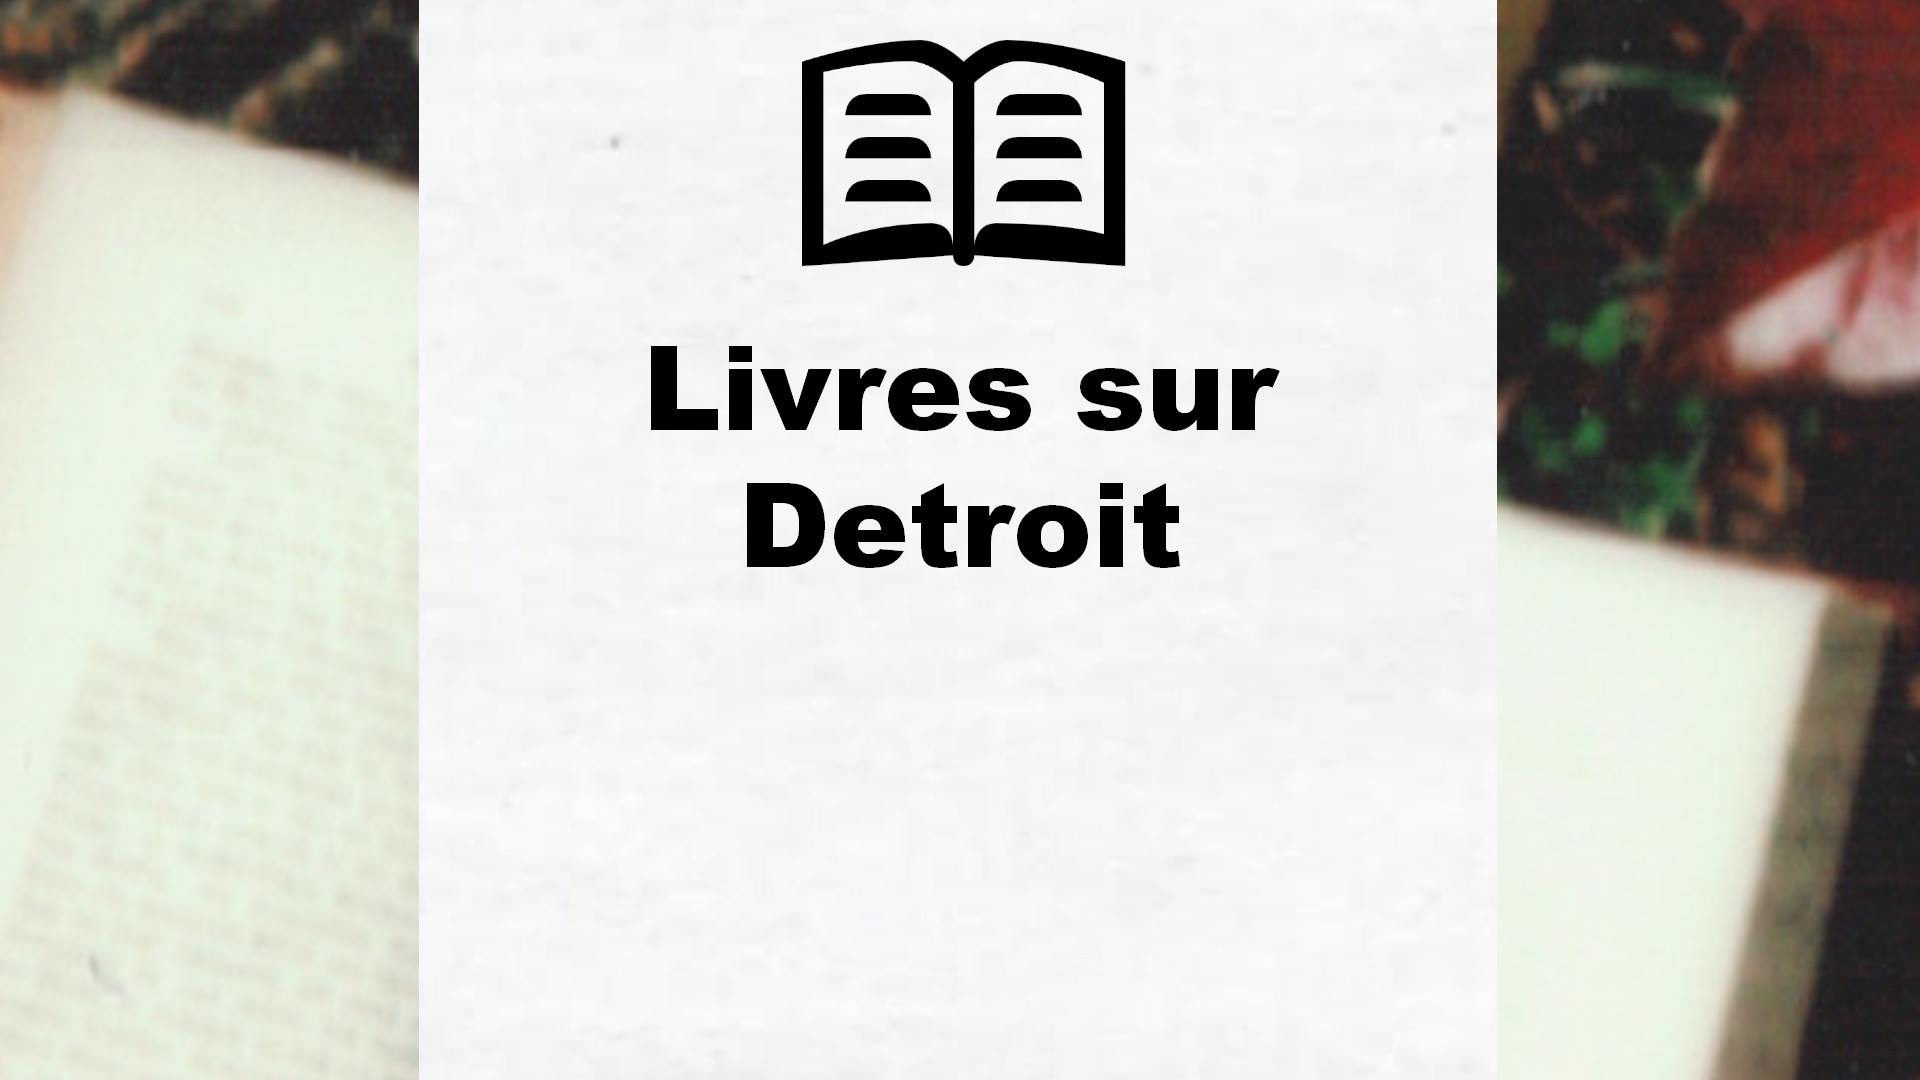 Livres sur Detroit